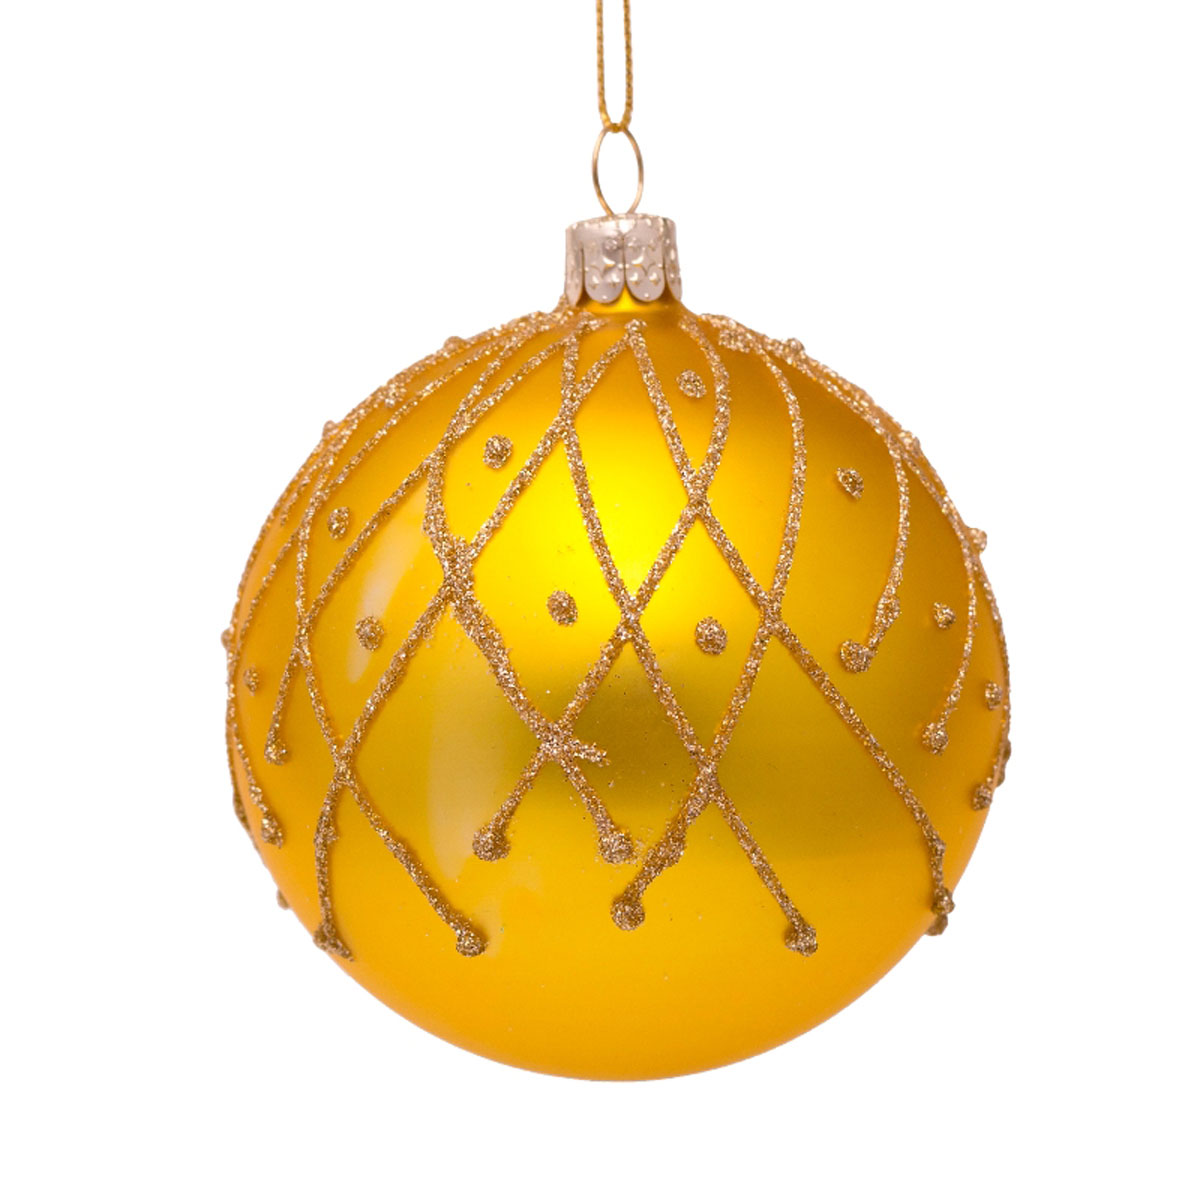  Weihnachtskugel Gelb matt mit Glitzerfäden Gold, Glas,  D. ca. 8cm 